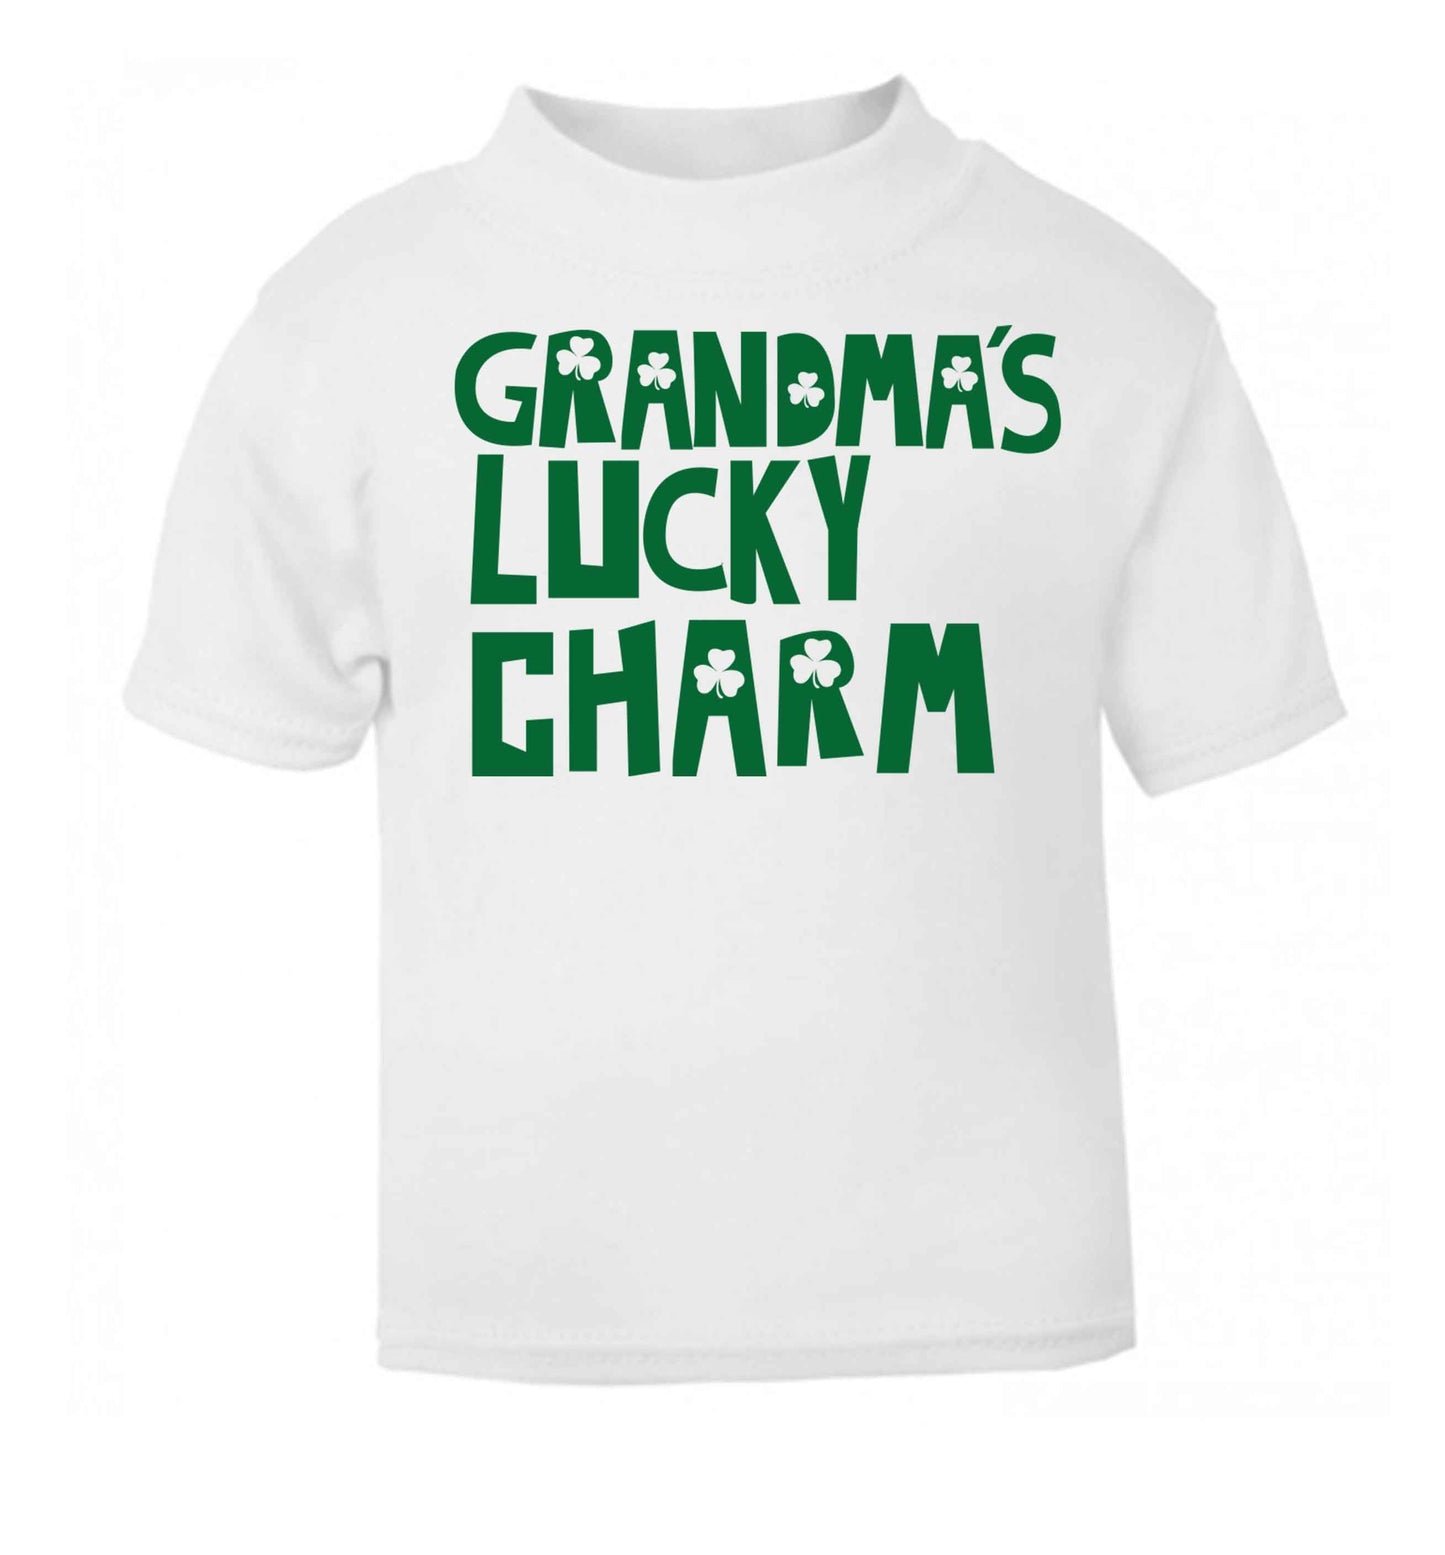 Grandma's lucky charm white baby toddler Tshirt 2 Years